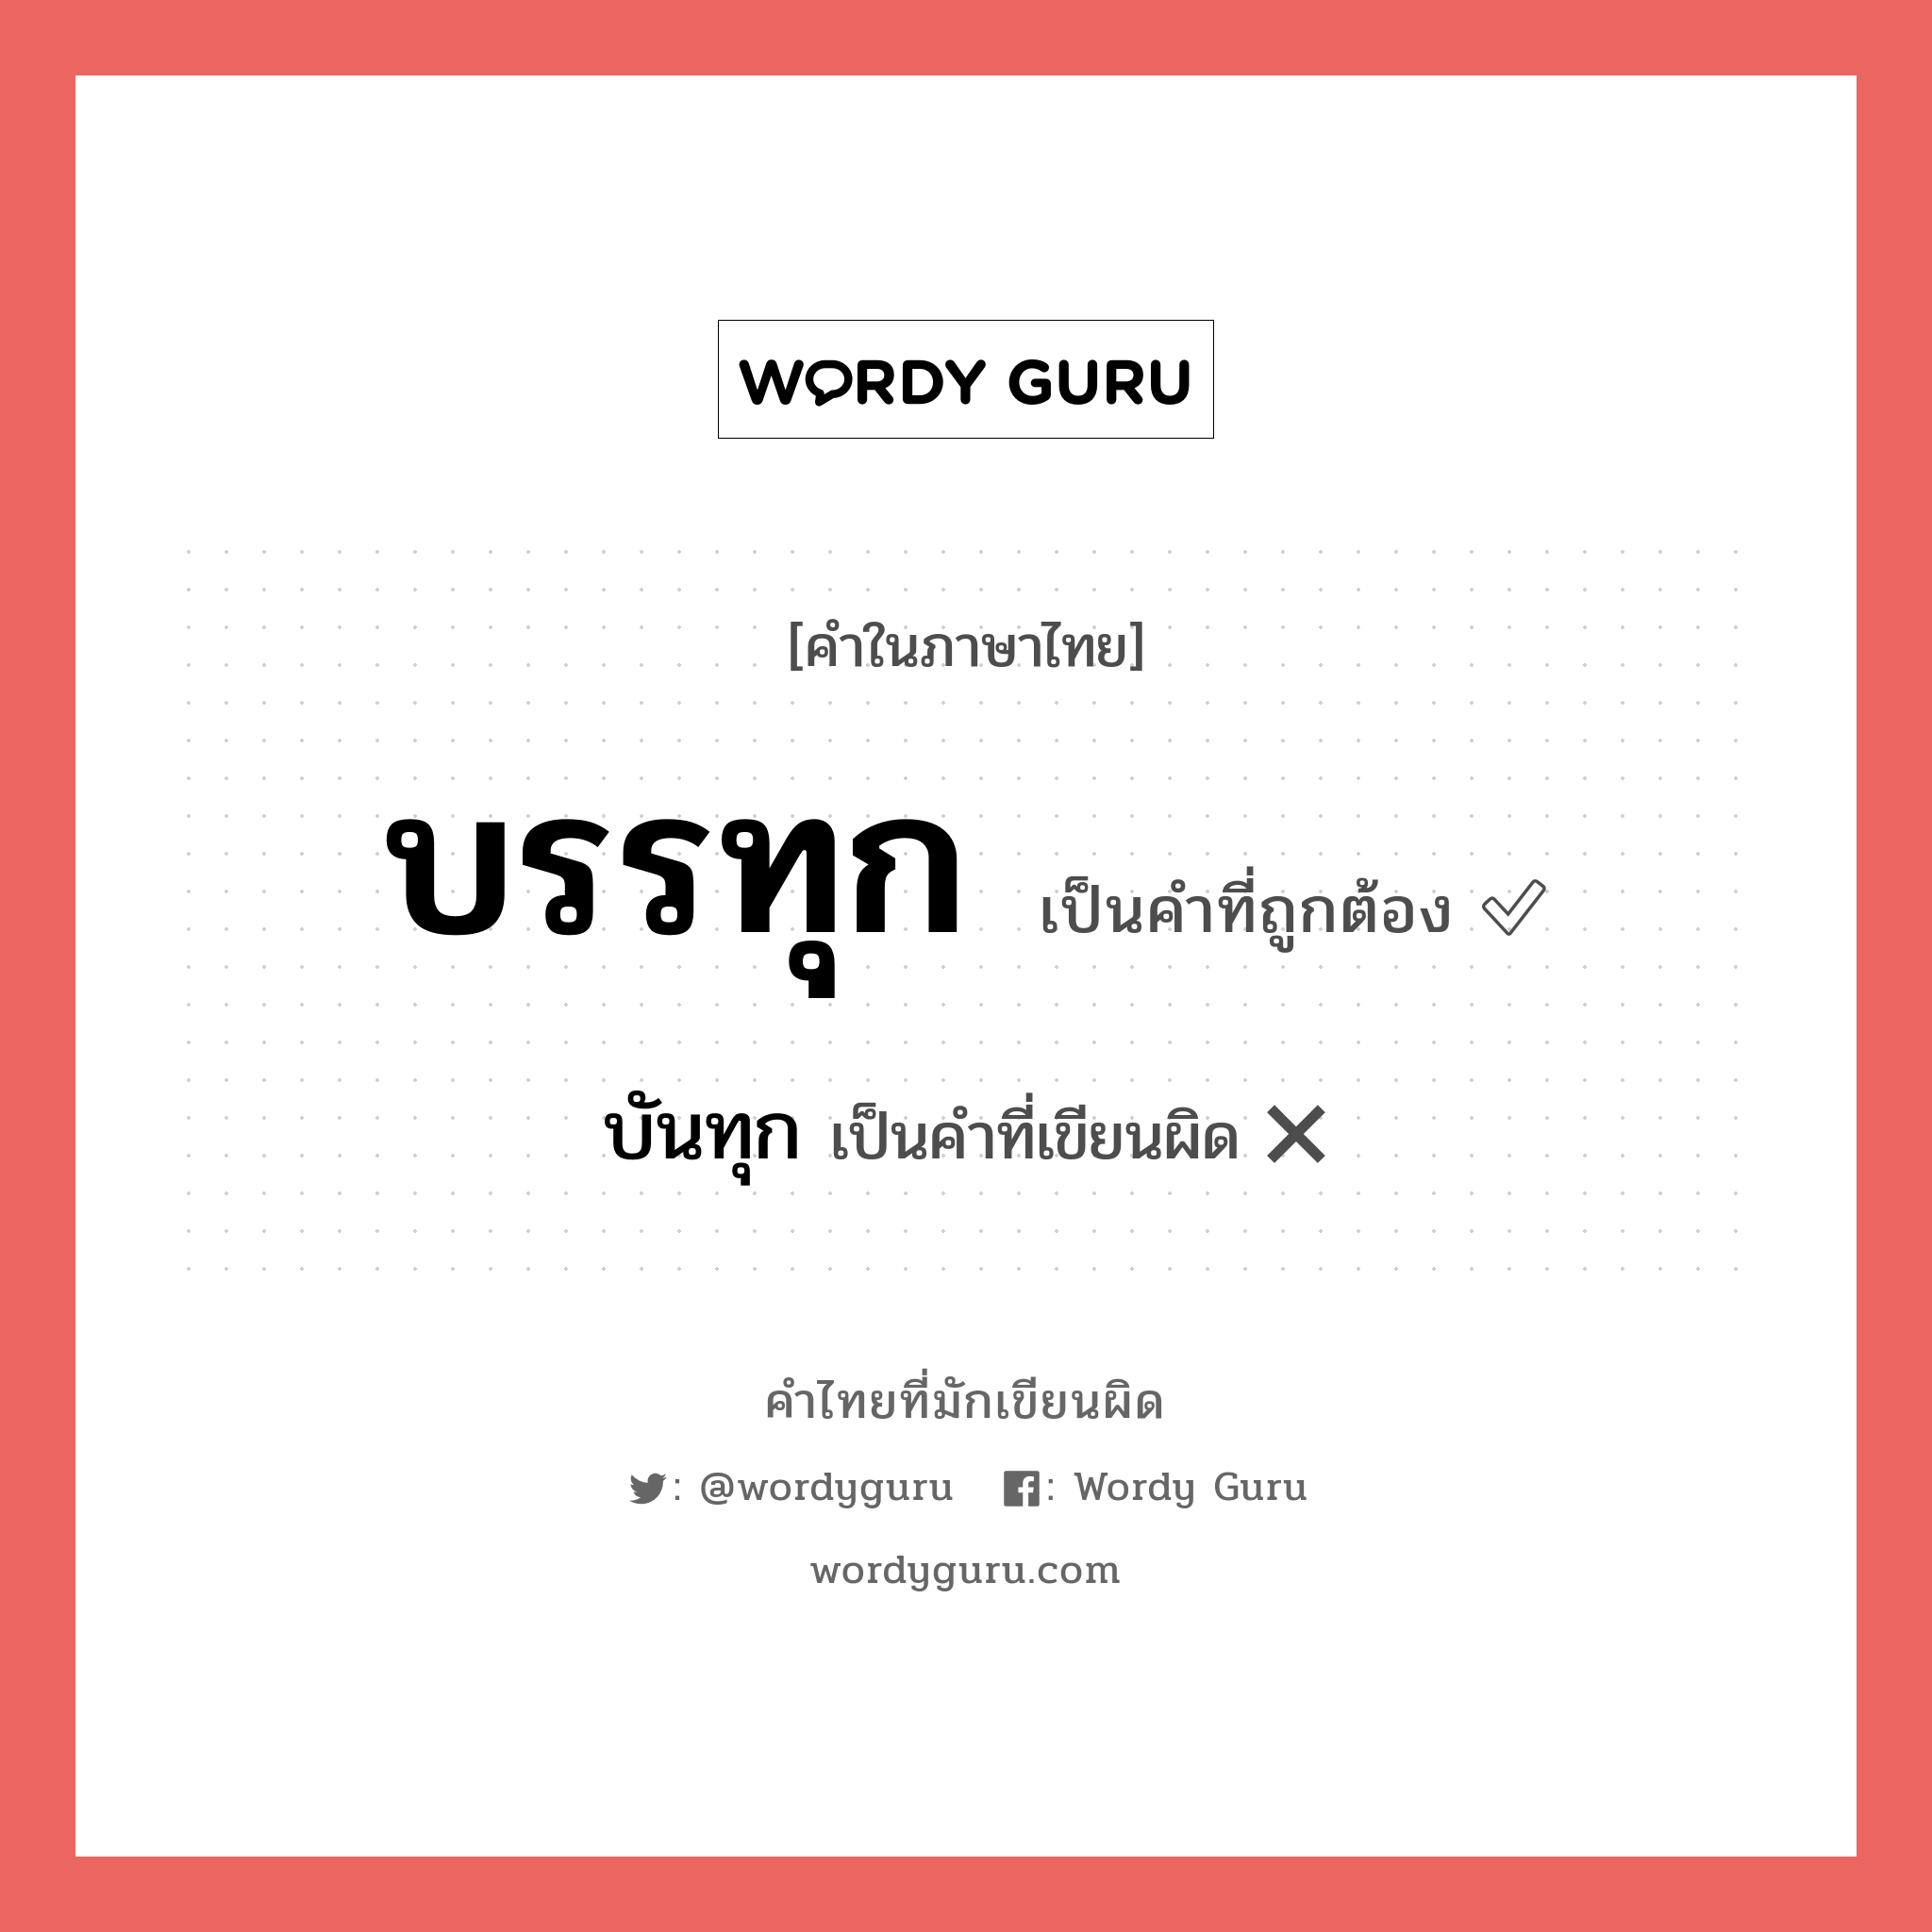 บรรทุก หรือ บันทุก เขียนยังไง? คำไหนเขียนถูก?, คำในภาษาไทยที่มักเขียนผิด บรรทุก คำที่ผิด ❌ บันทุก